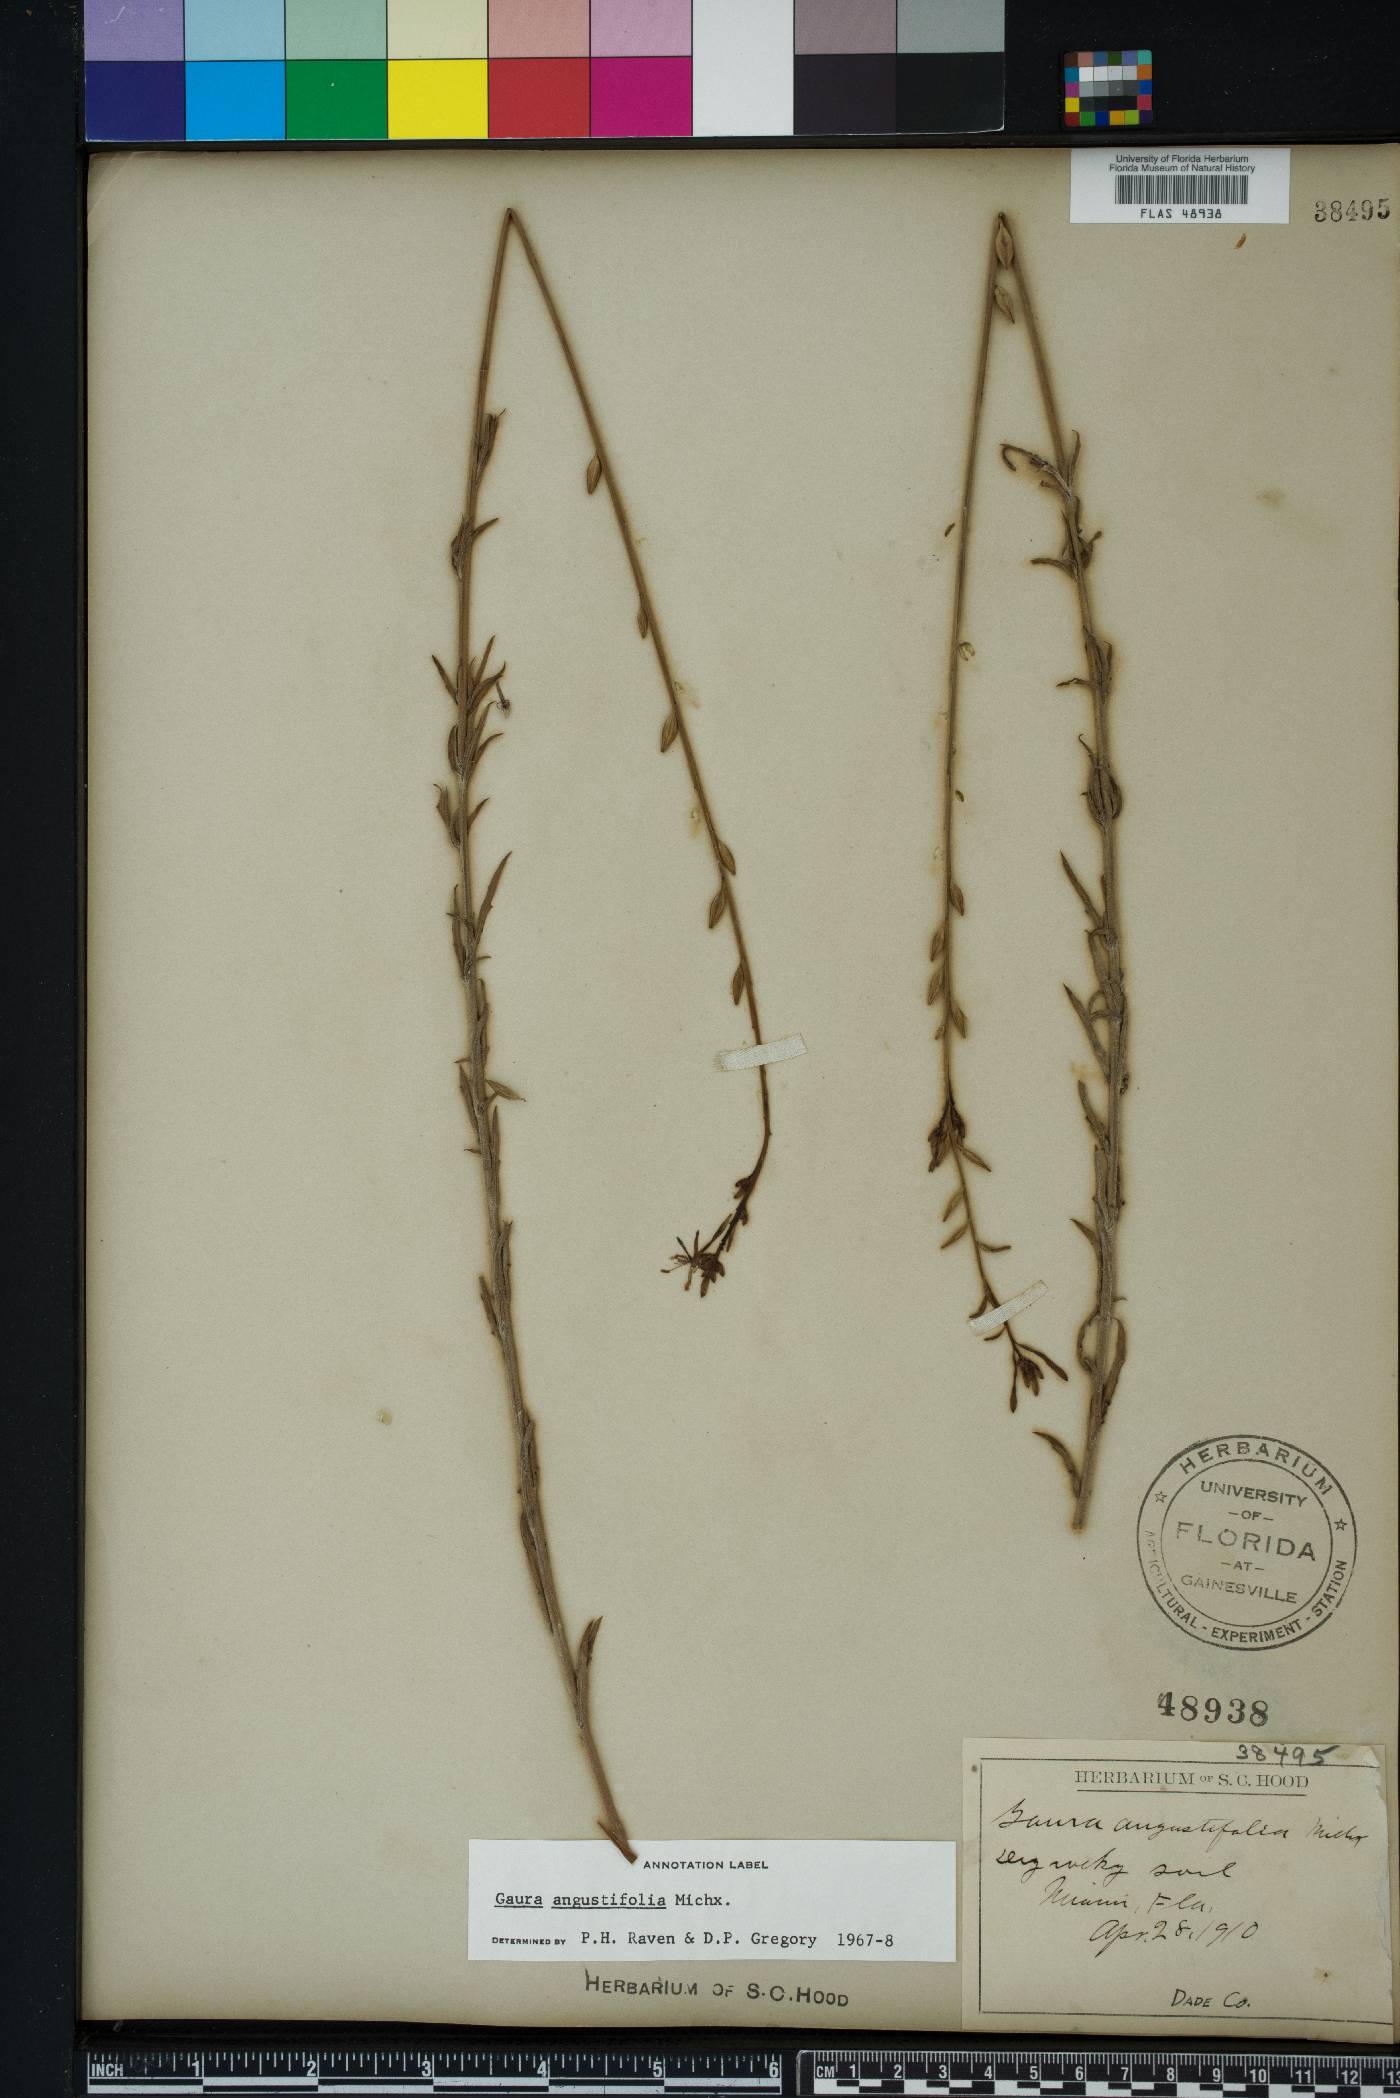 Oenothera simulans image